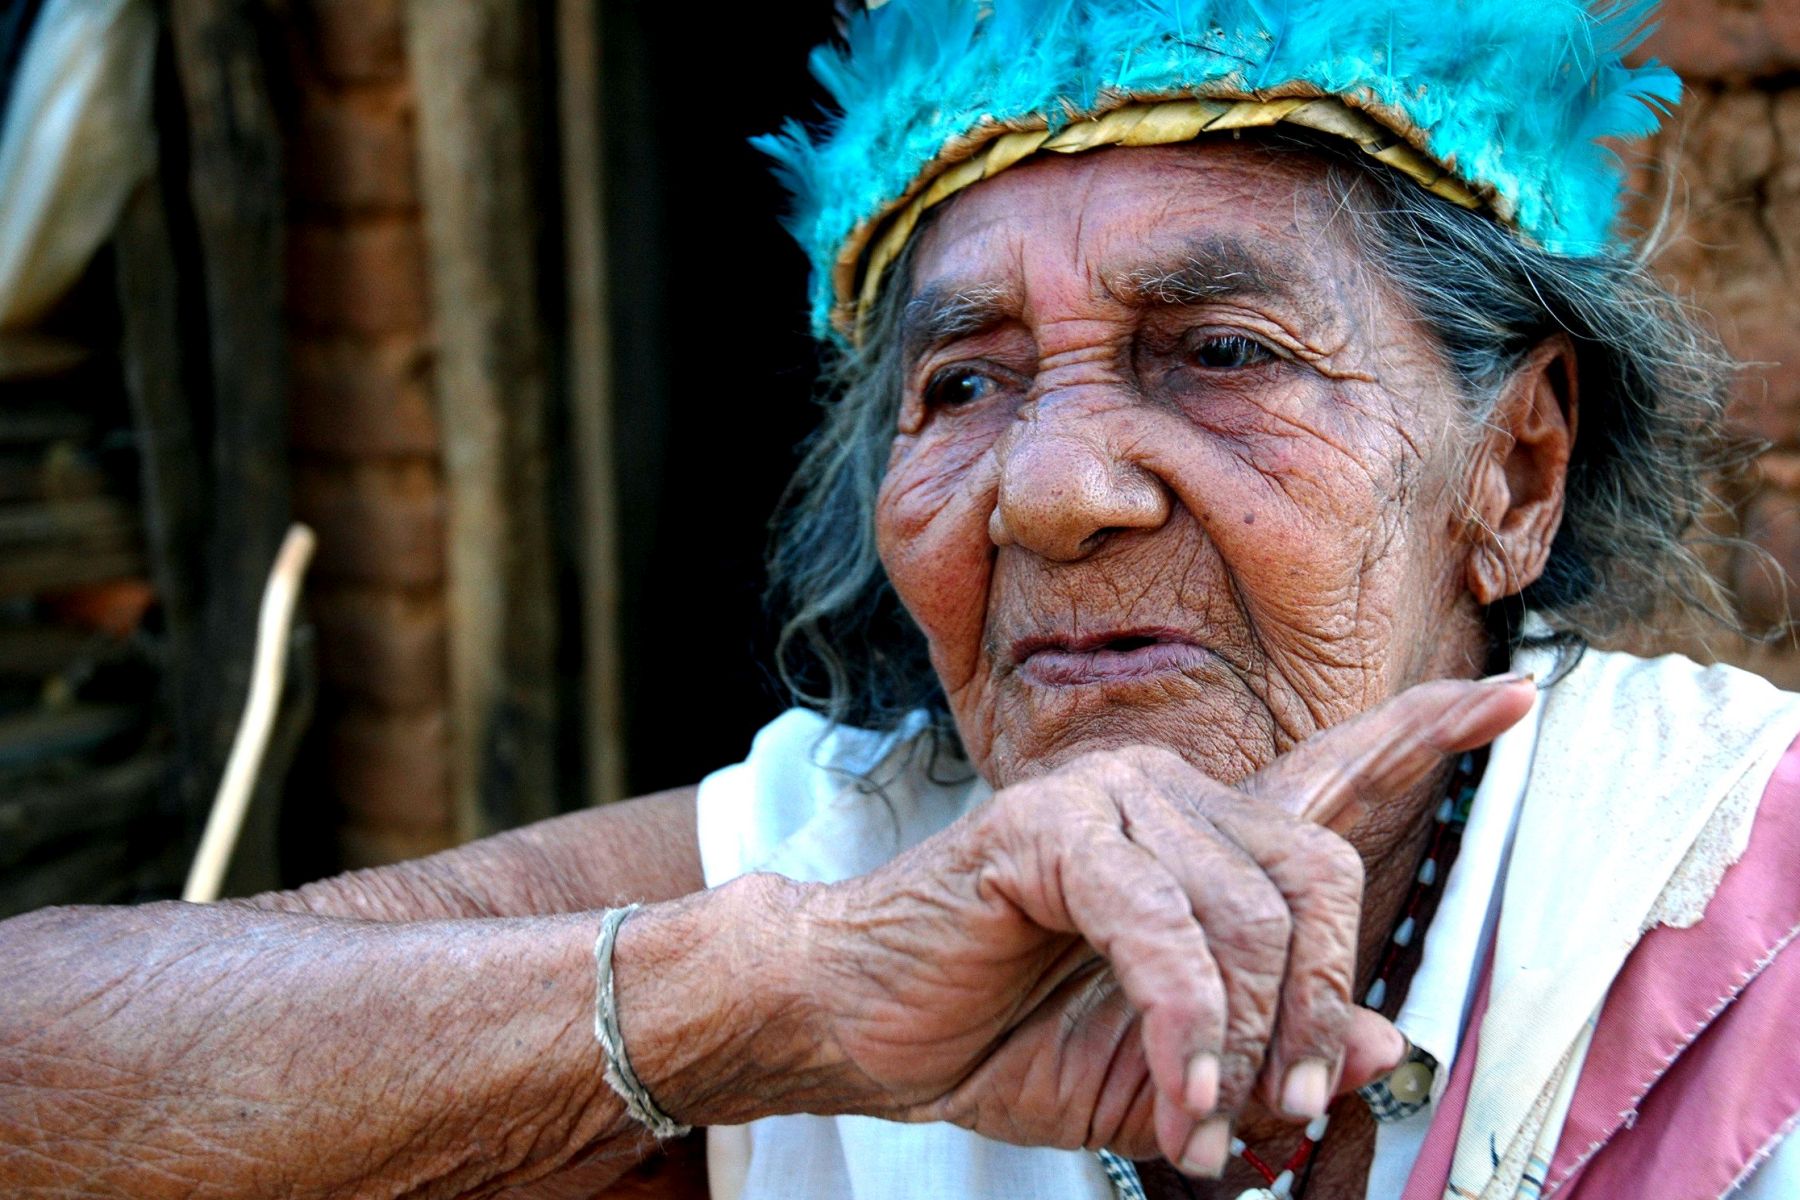 Profil einer indigenen Frau mit türkisem Kopfschmuck